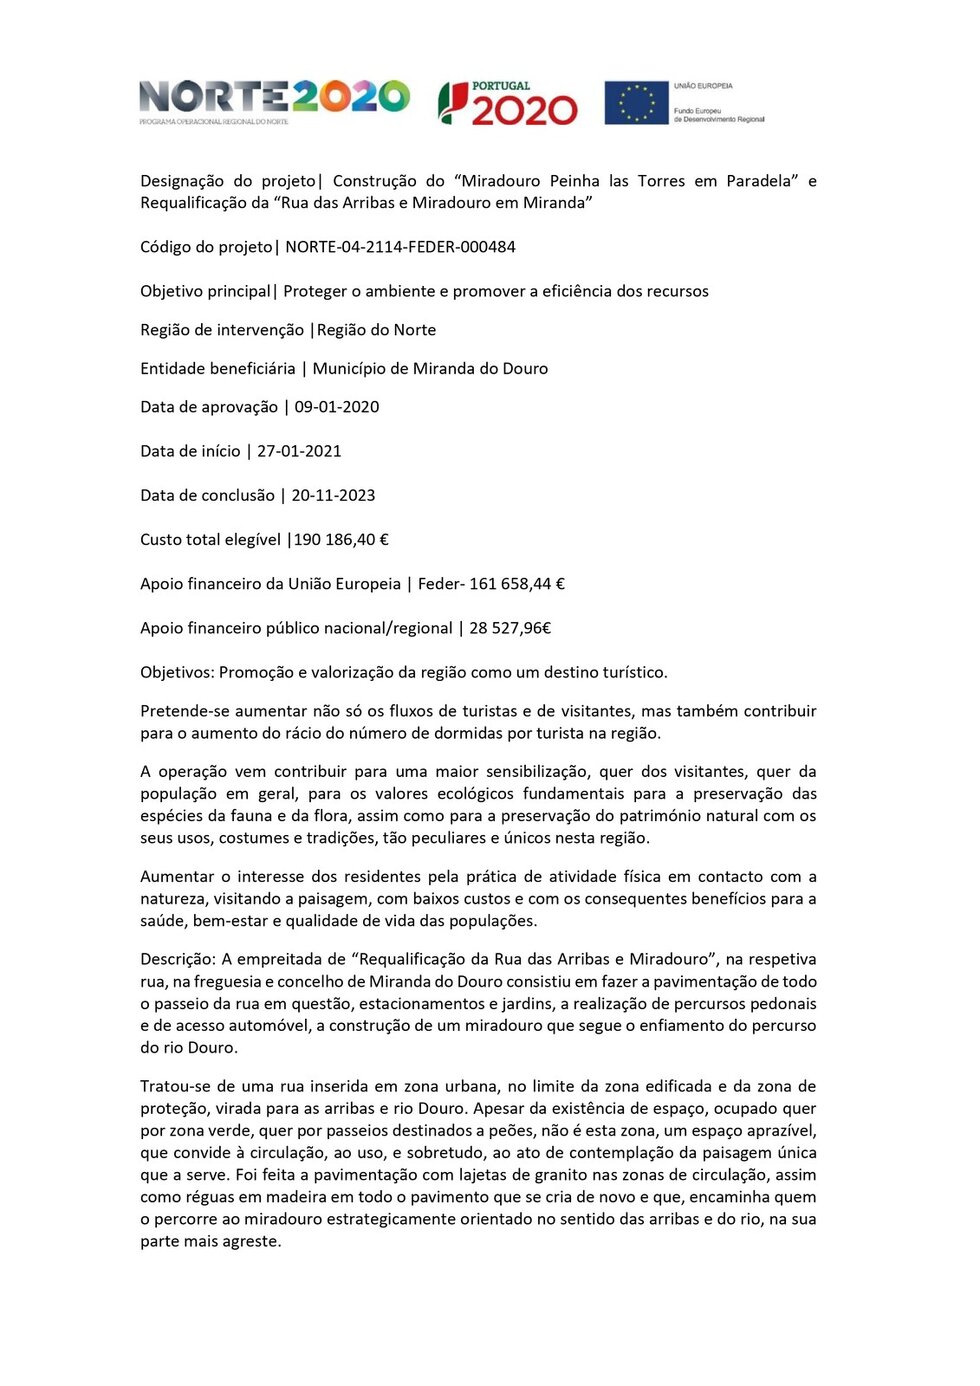 Divulgação_Miradouros (1)_page-0001